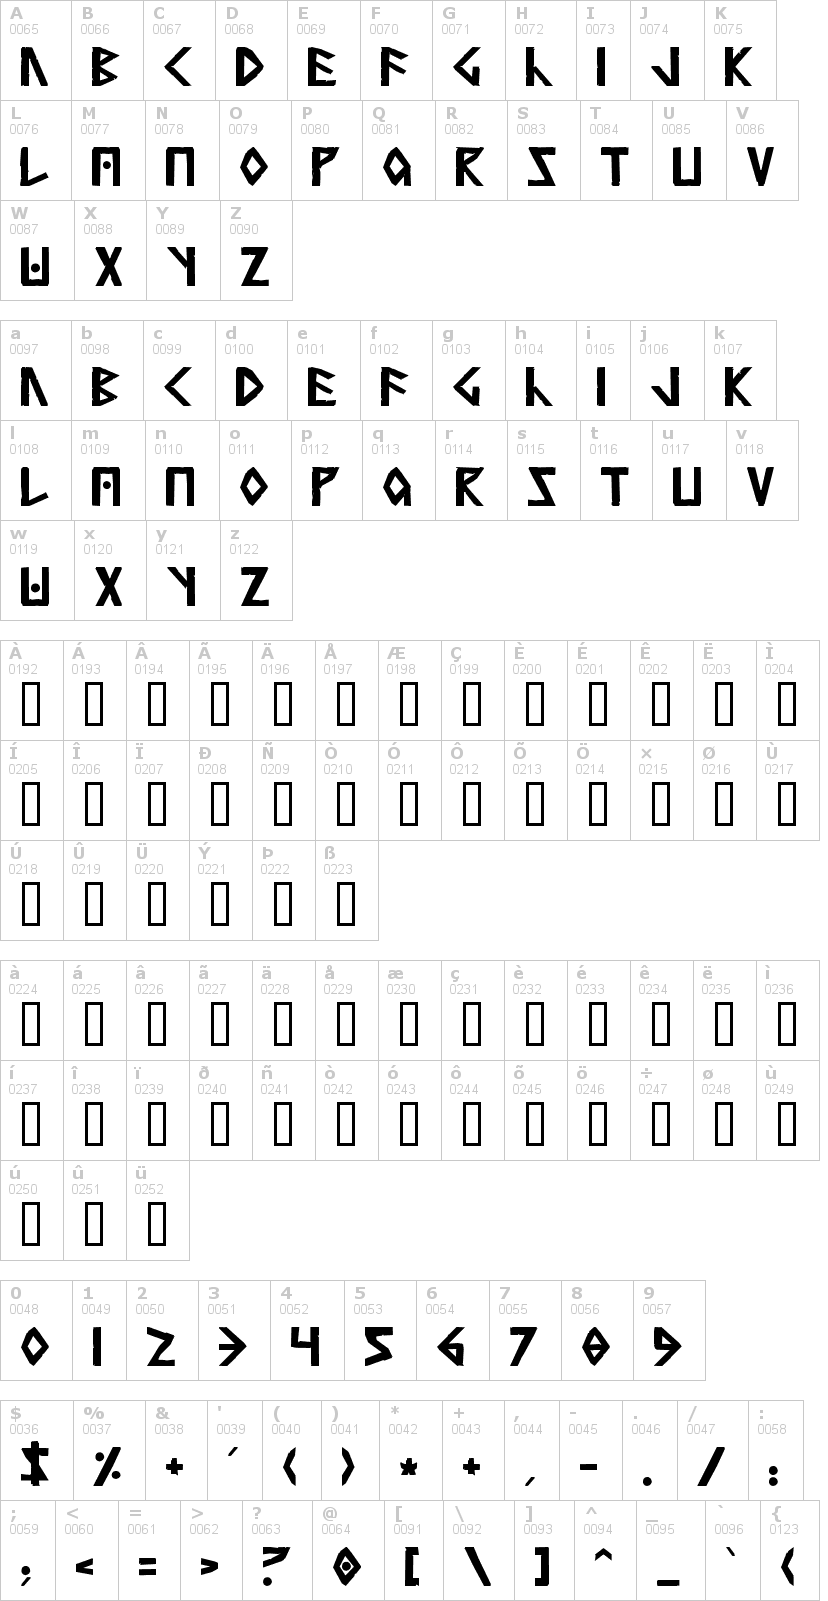 Lettere dell'alfabeto del font simple-runes con le quali è possibile realizzare adesivi prespaziati